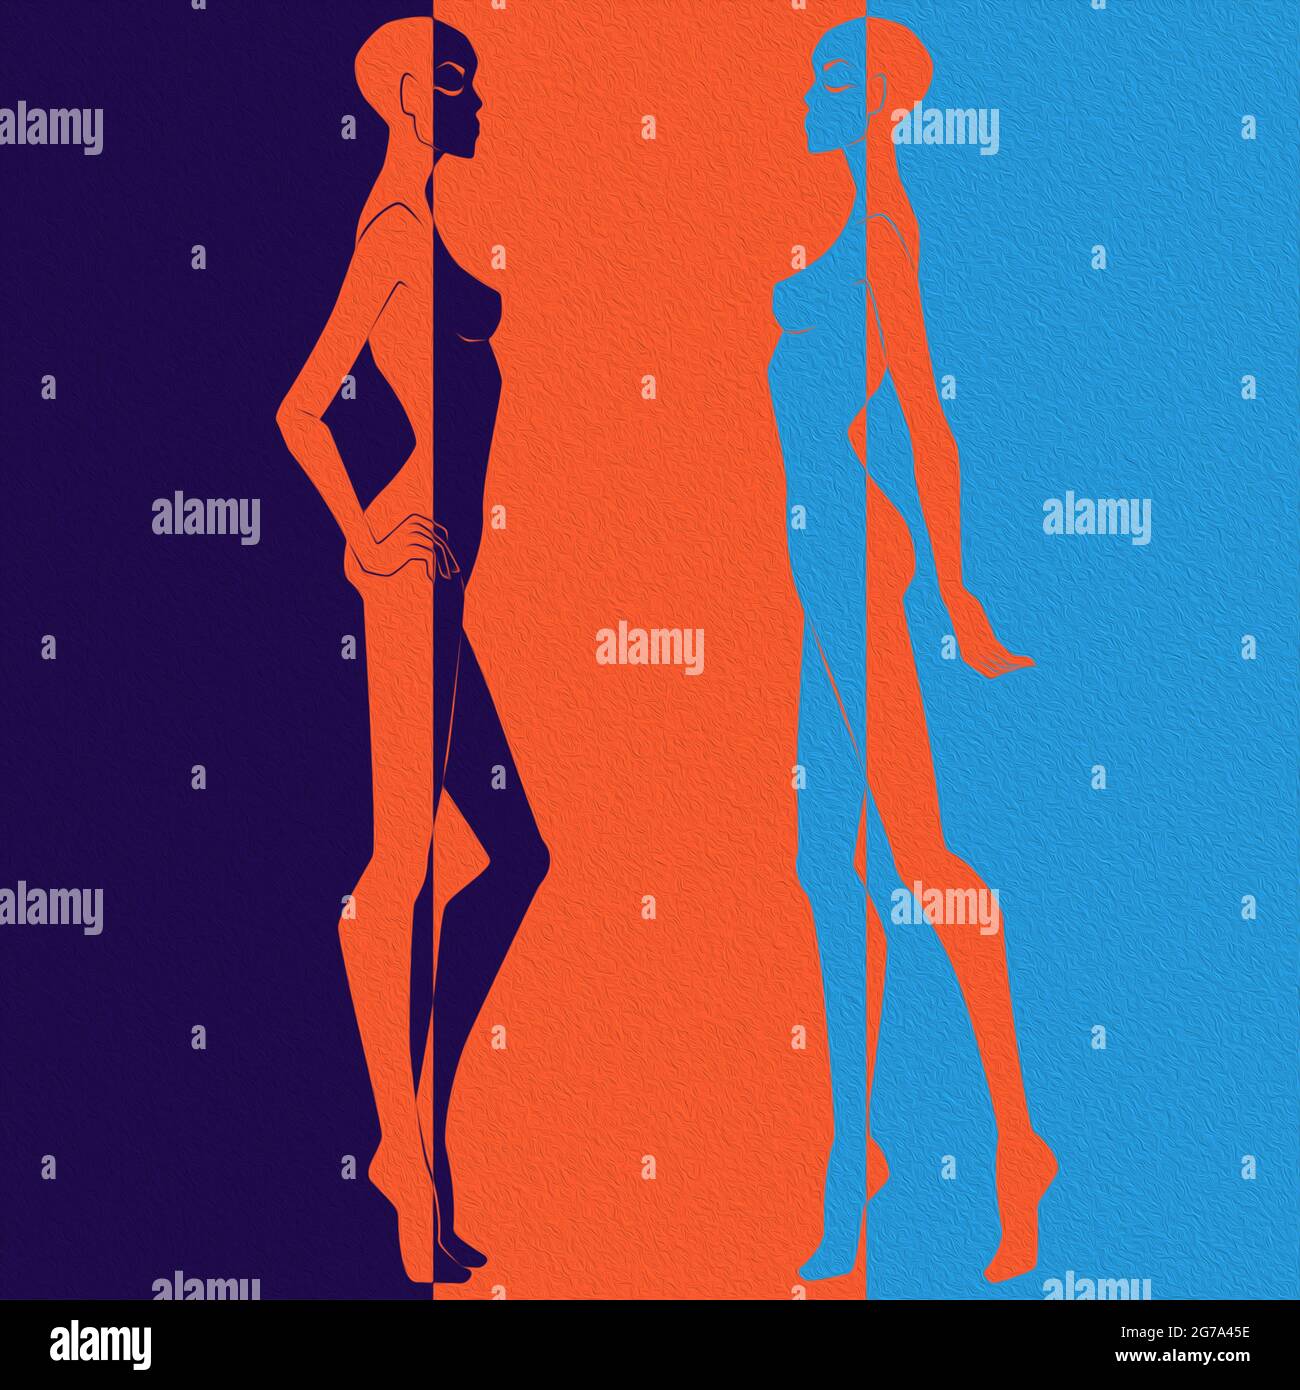 Abstrakt von zwei eleganten weiblichen Körpern, gespalten in negativen und positiven Raum, farbenfroher konzeptueller Ausdruck Stockfoto